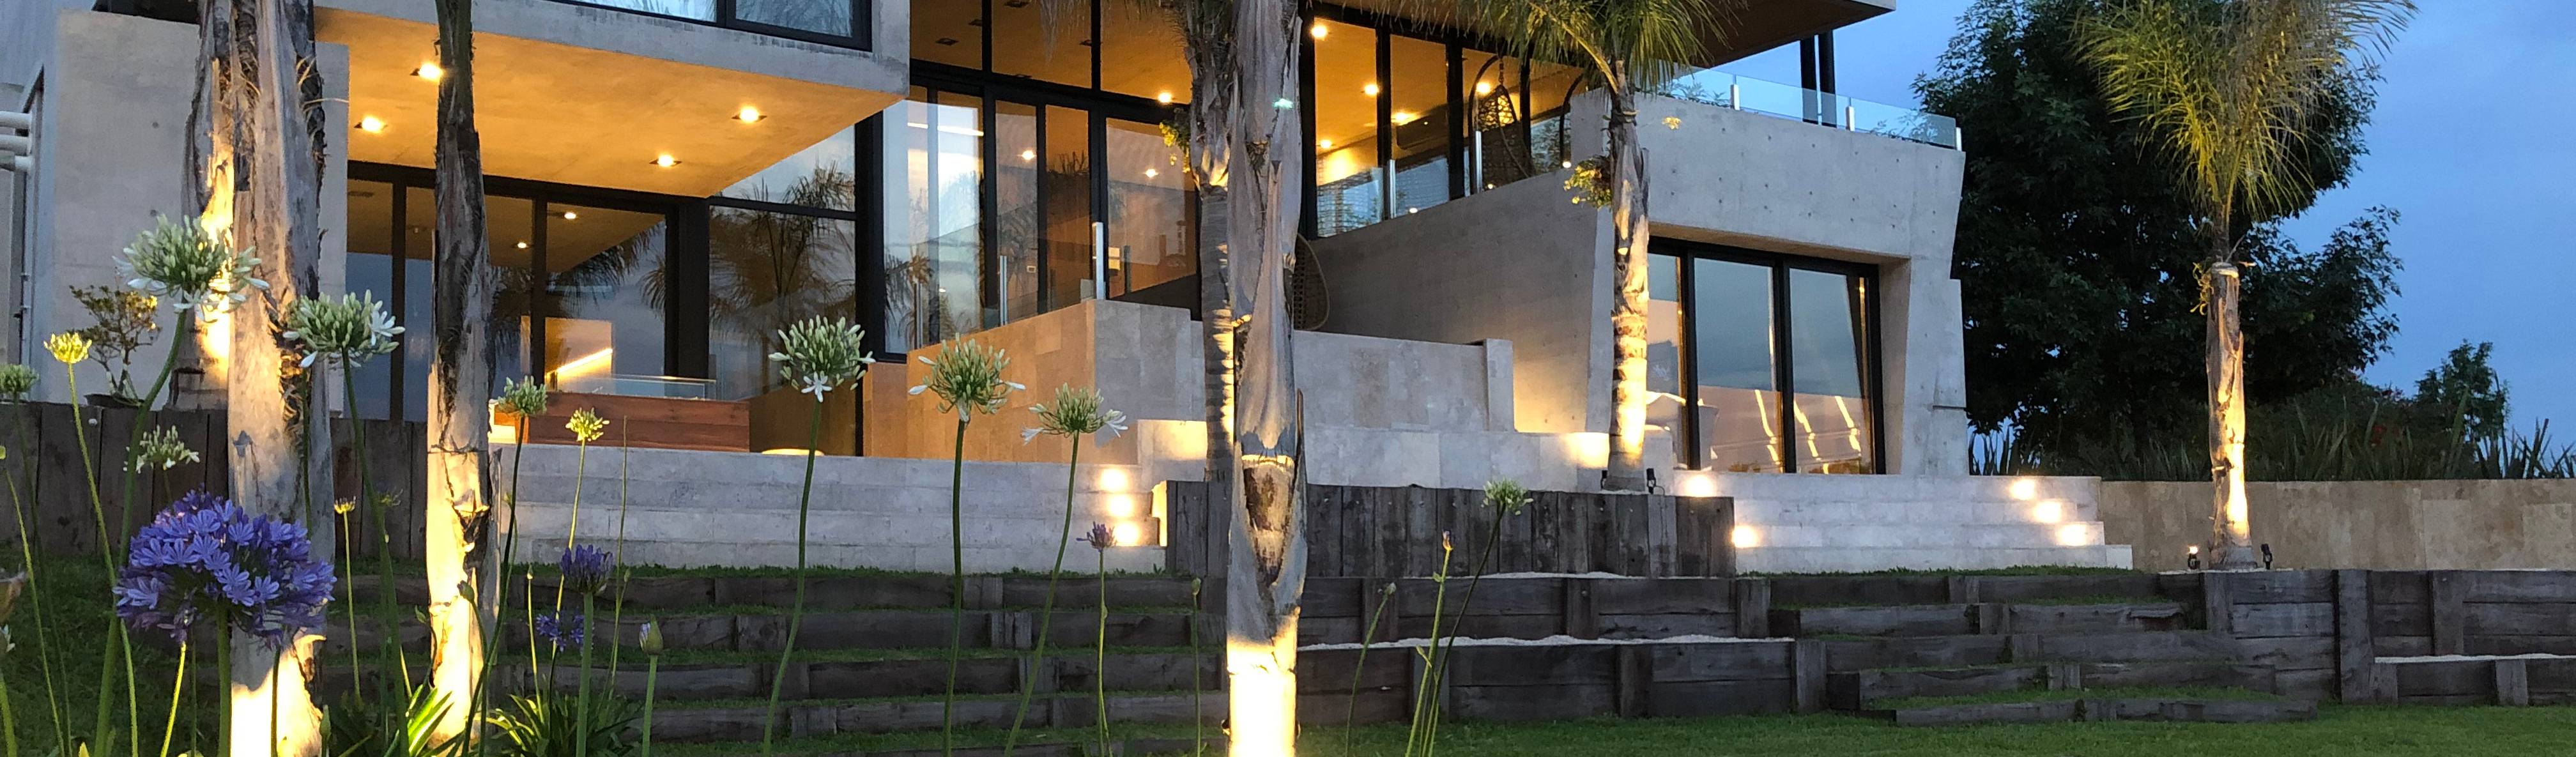 Maximiliano Lago Arquitectura—Estudio Azteca